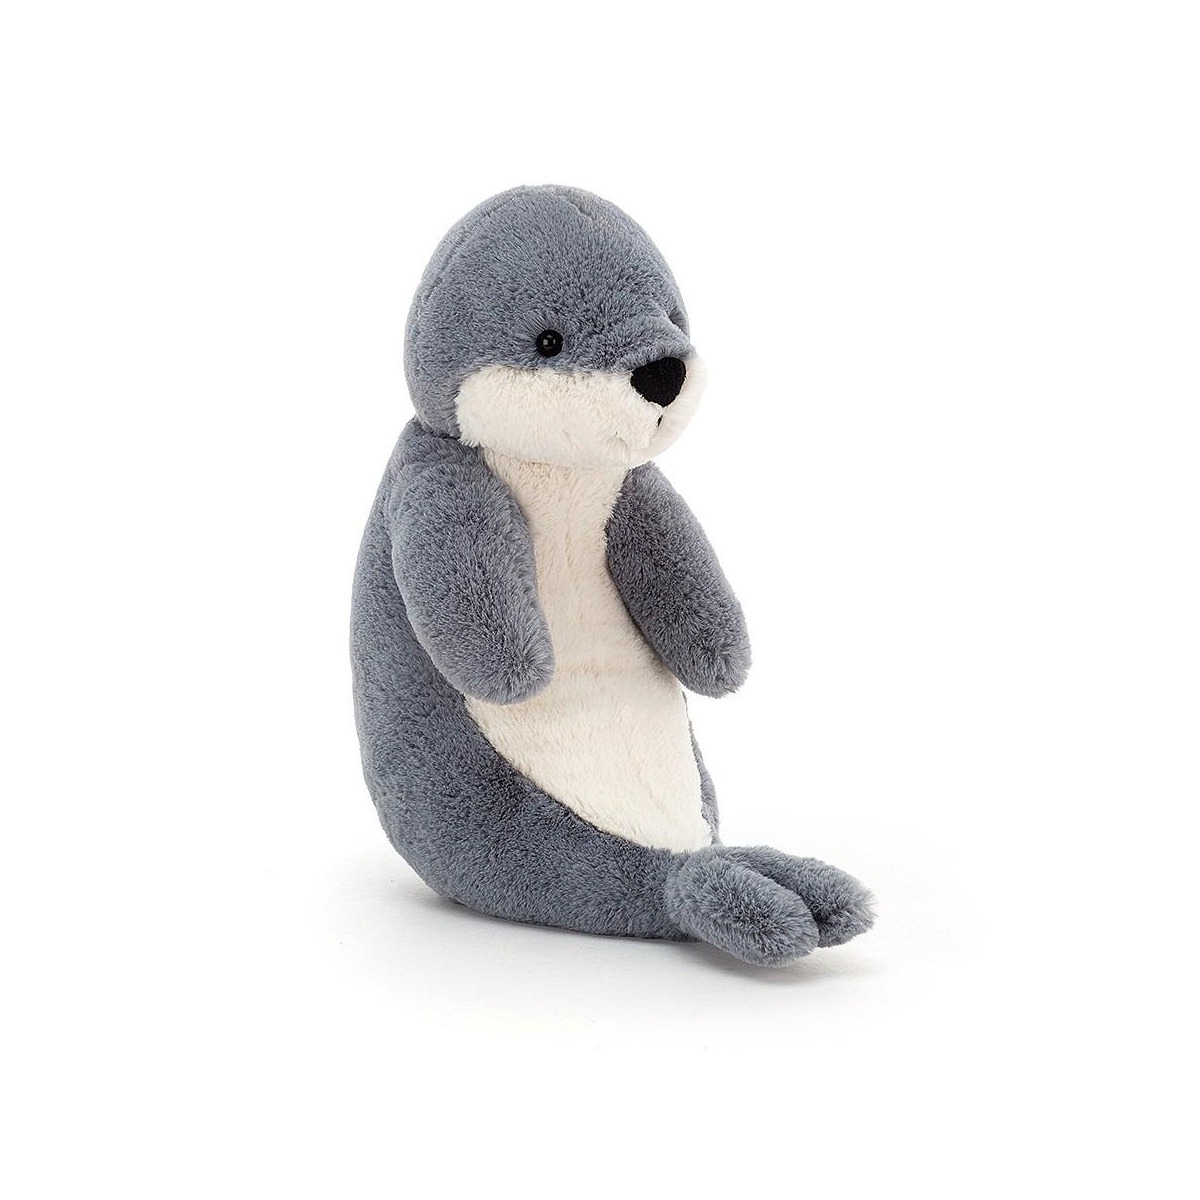 Peluche Bashful seal de Jellycat